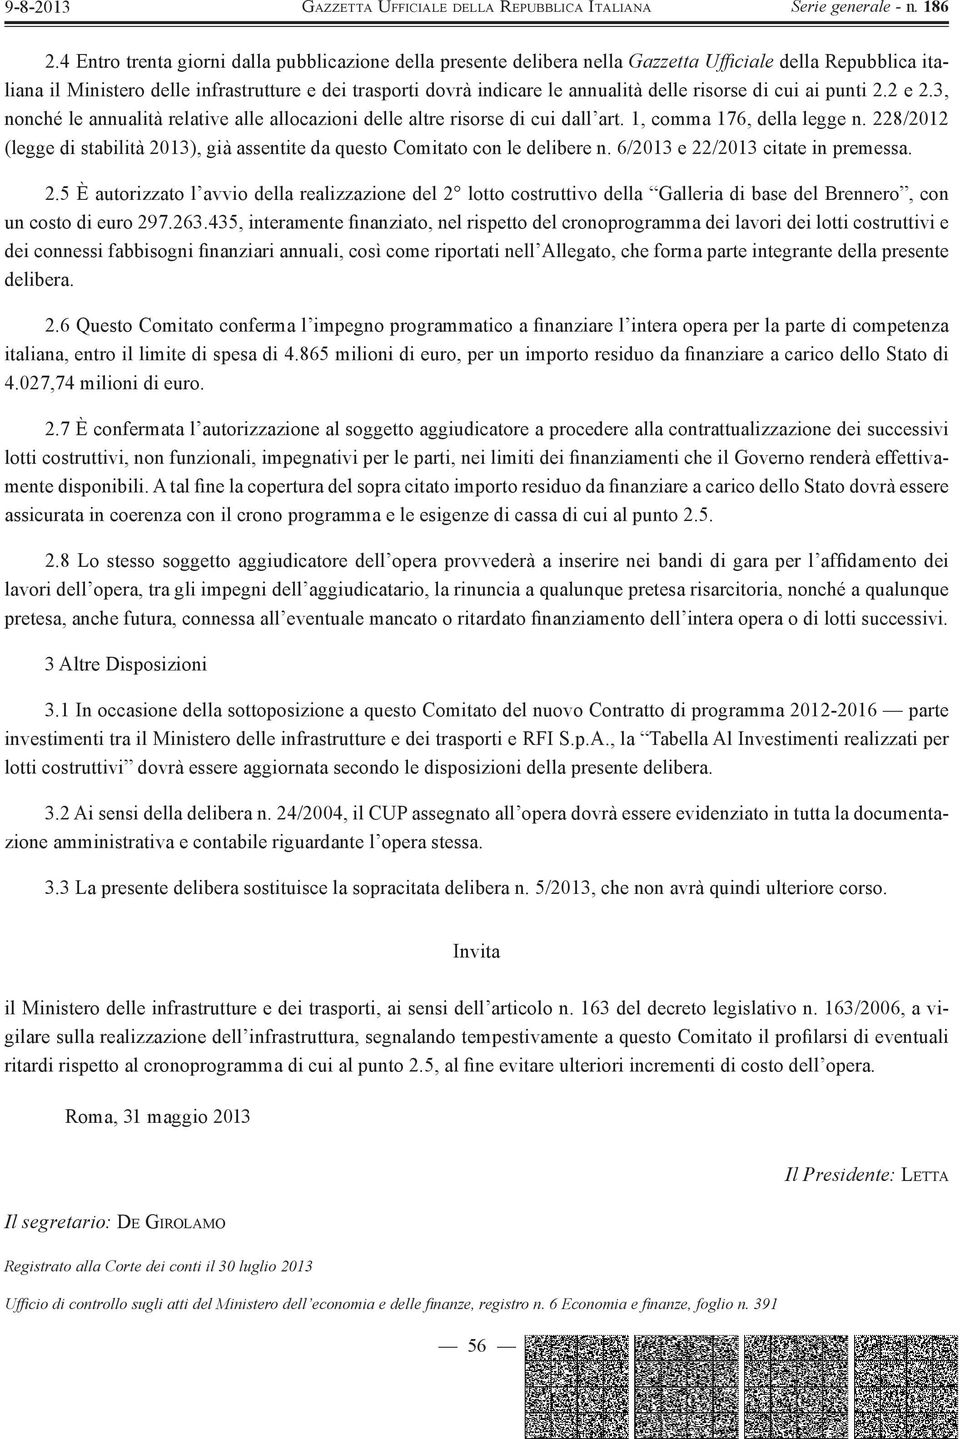 228/2012 (legge di stabilità 2013), già assentite da questo Comitato con le delibere n. 6/2013 e 22/2013 citate in premessa. 2.5 È autorizzato l avvio della realizzazione del 2 lotto costruttivo della Galleria di base del Brennero, con un costo di euro 297.